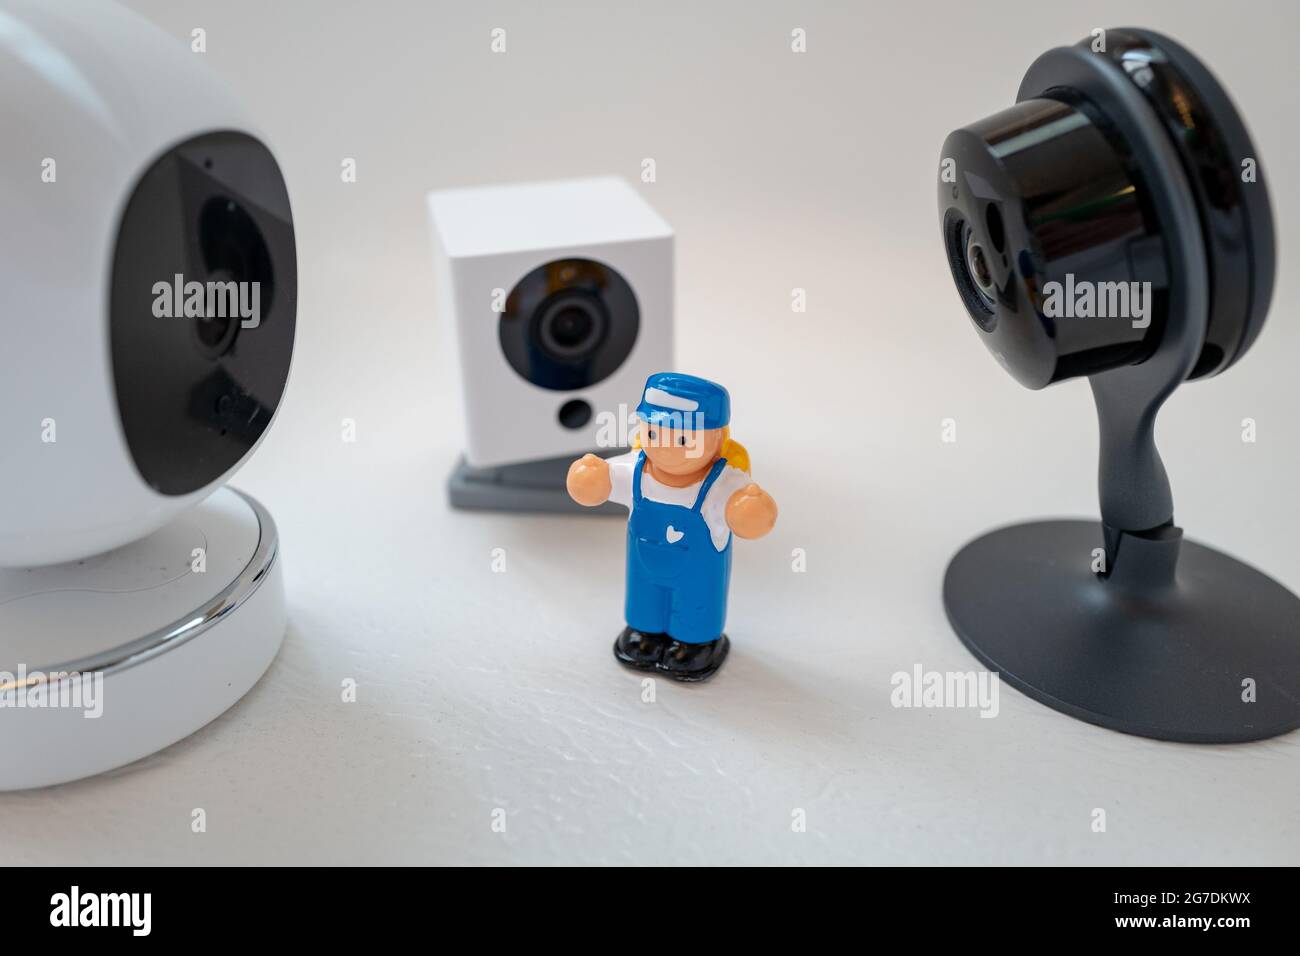 Immagine illustrativa di un giocattolo di plastica per bambini circondato da telecamere di sicurezza di Google Nest, Simcam e Wyze su sfondo bianco, che suggerisce la sorveglianza di massa, a San Ramon, California, novembre 20, 2020. () Foto Stock